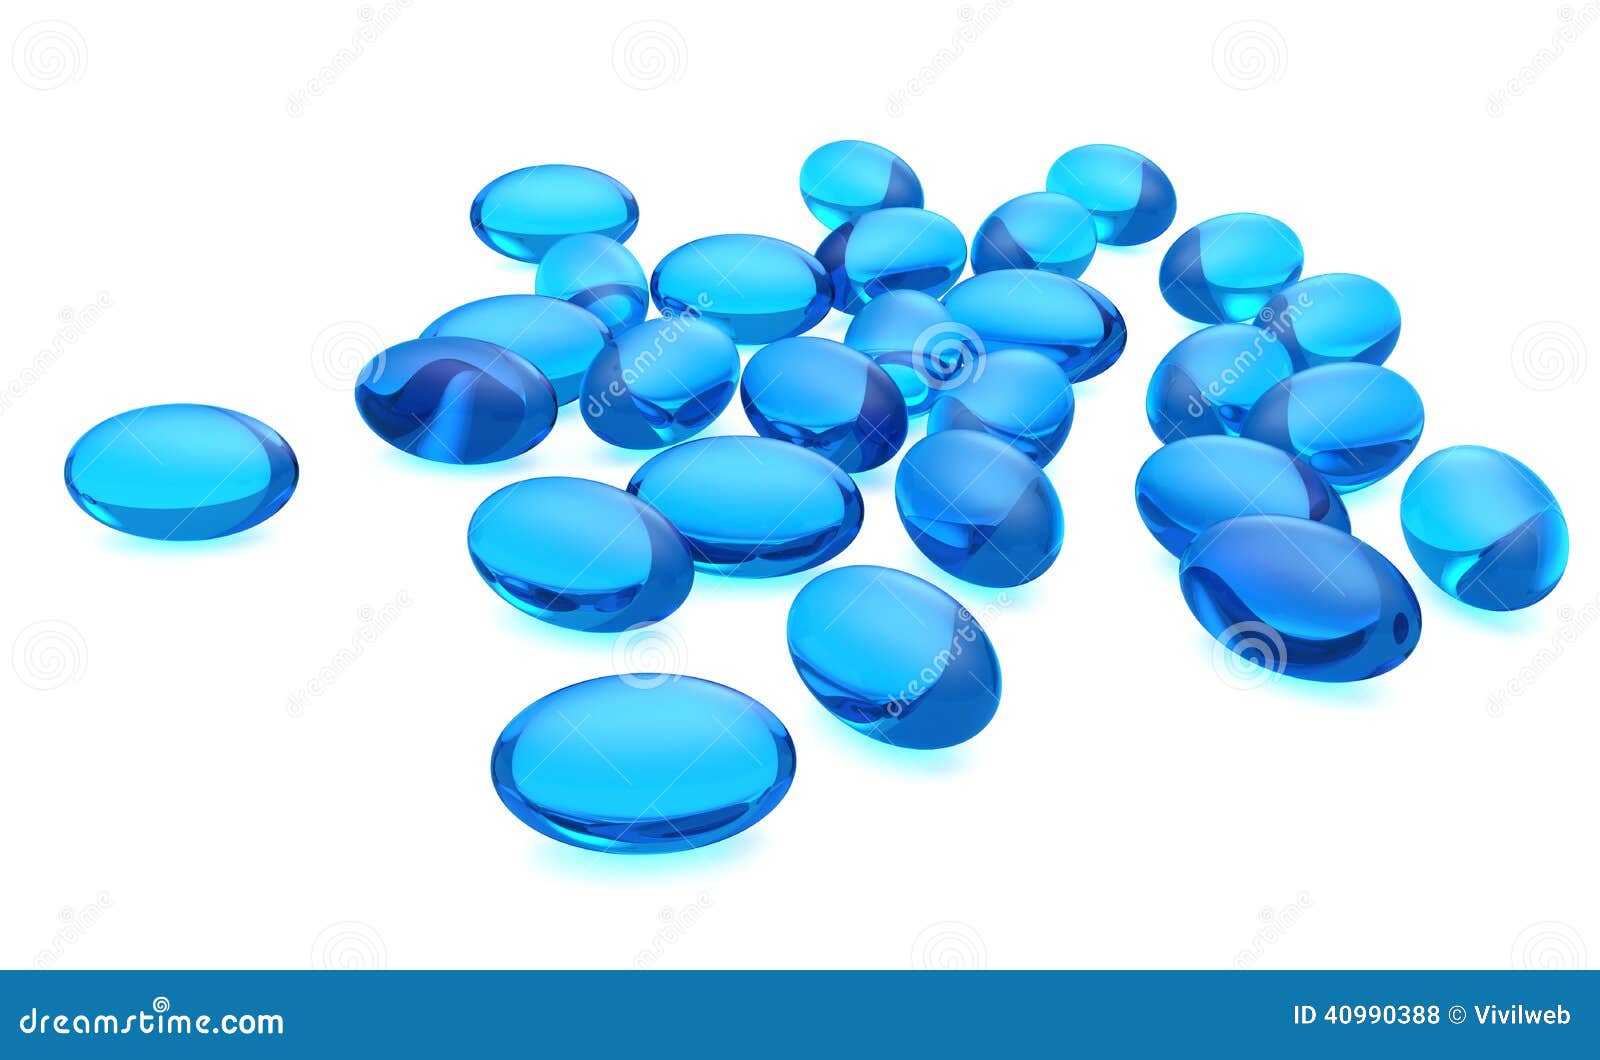 gel capsules